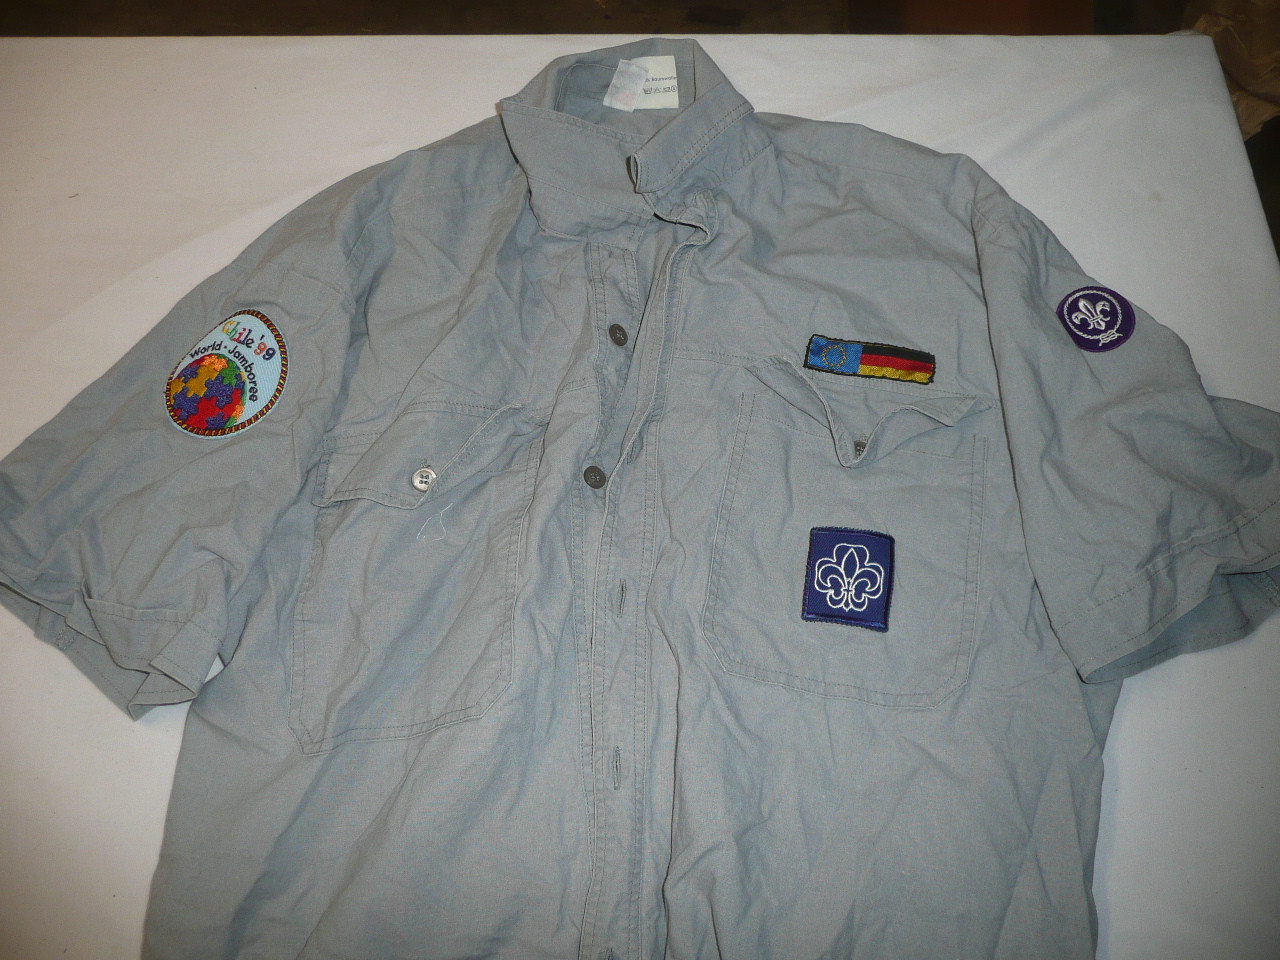 1999 World Jamboree German (?) Contingent Boy Scout Uniform Shirt, Size 41-42